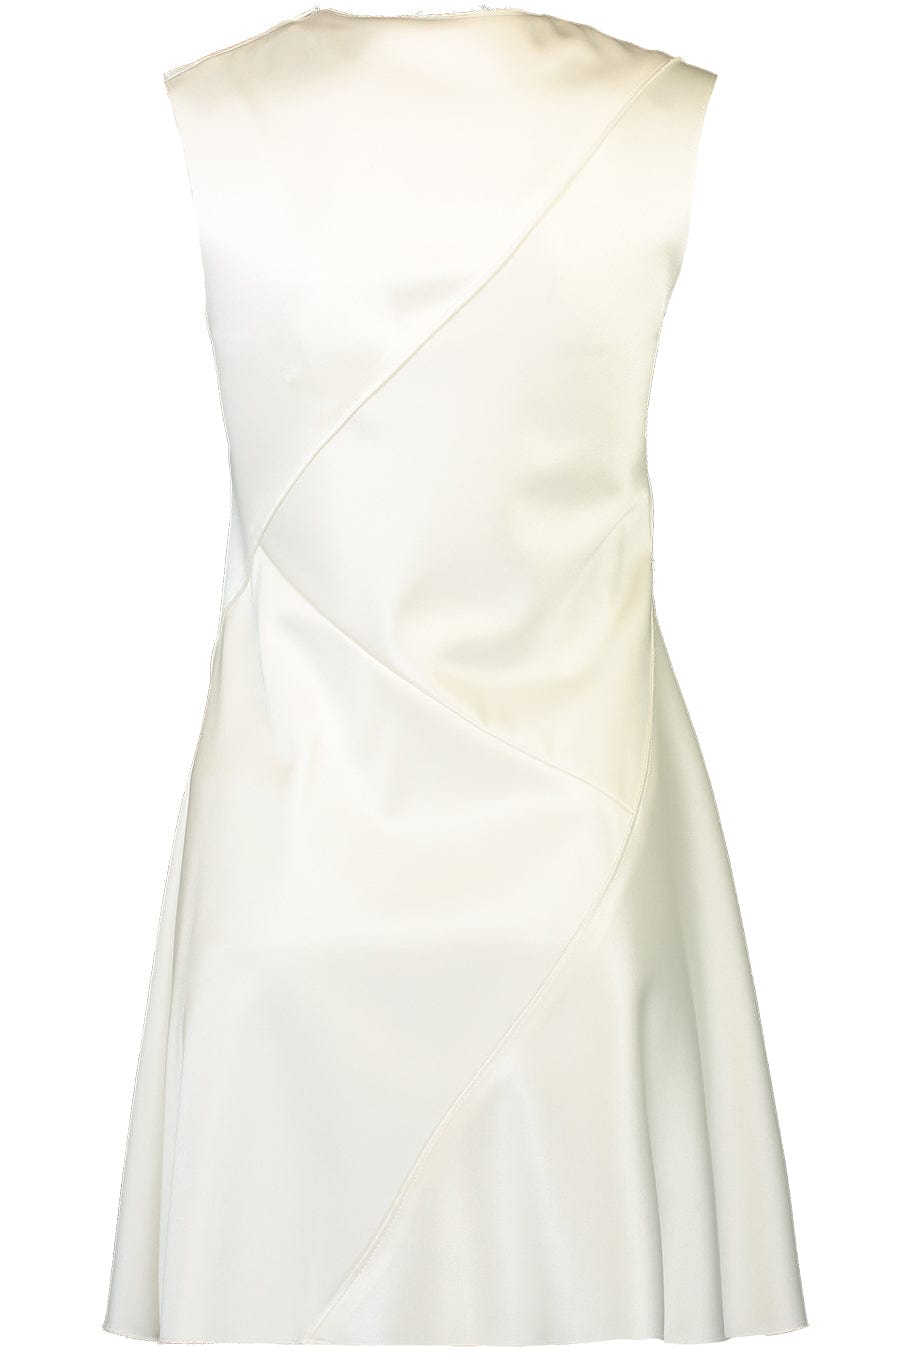 3.1 PHILLIP LIM-Silk Mini Dress-IVORY